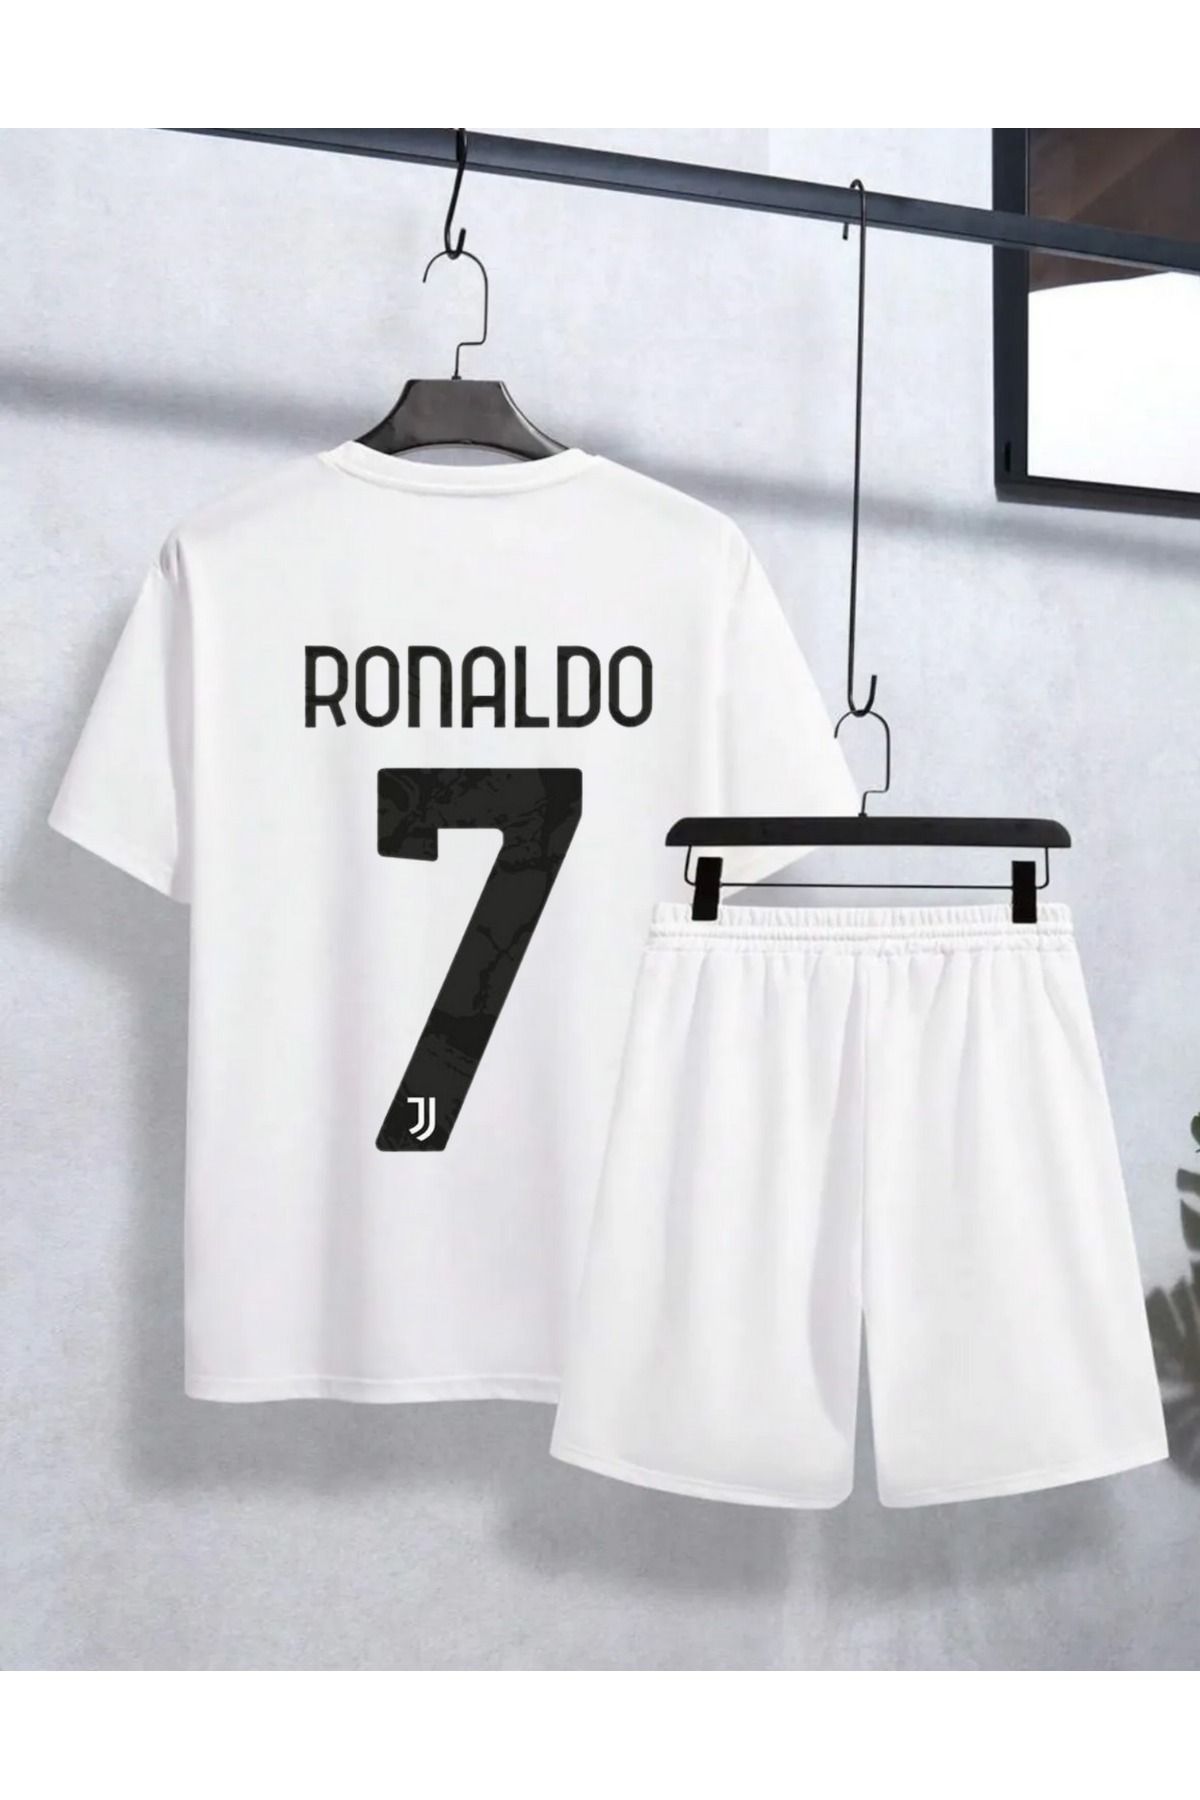 AMMA Unisex Cristiano Ronaldo Baskılı Alt Üst %100 Pamuk T-Shirt Şort Takım